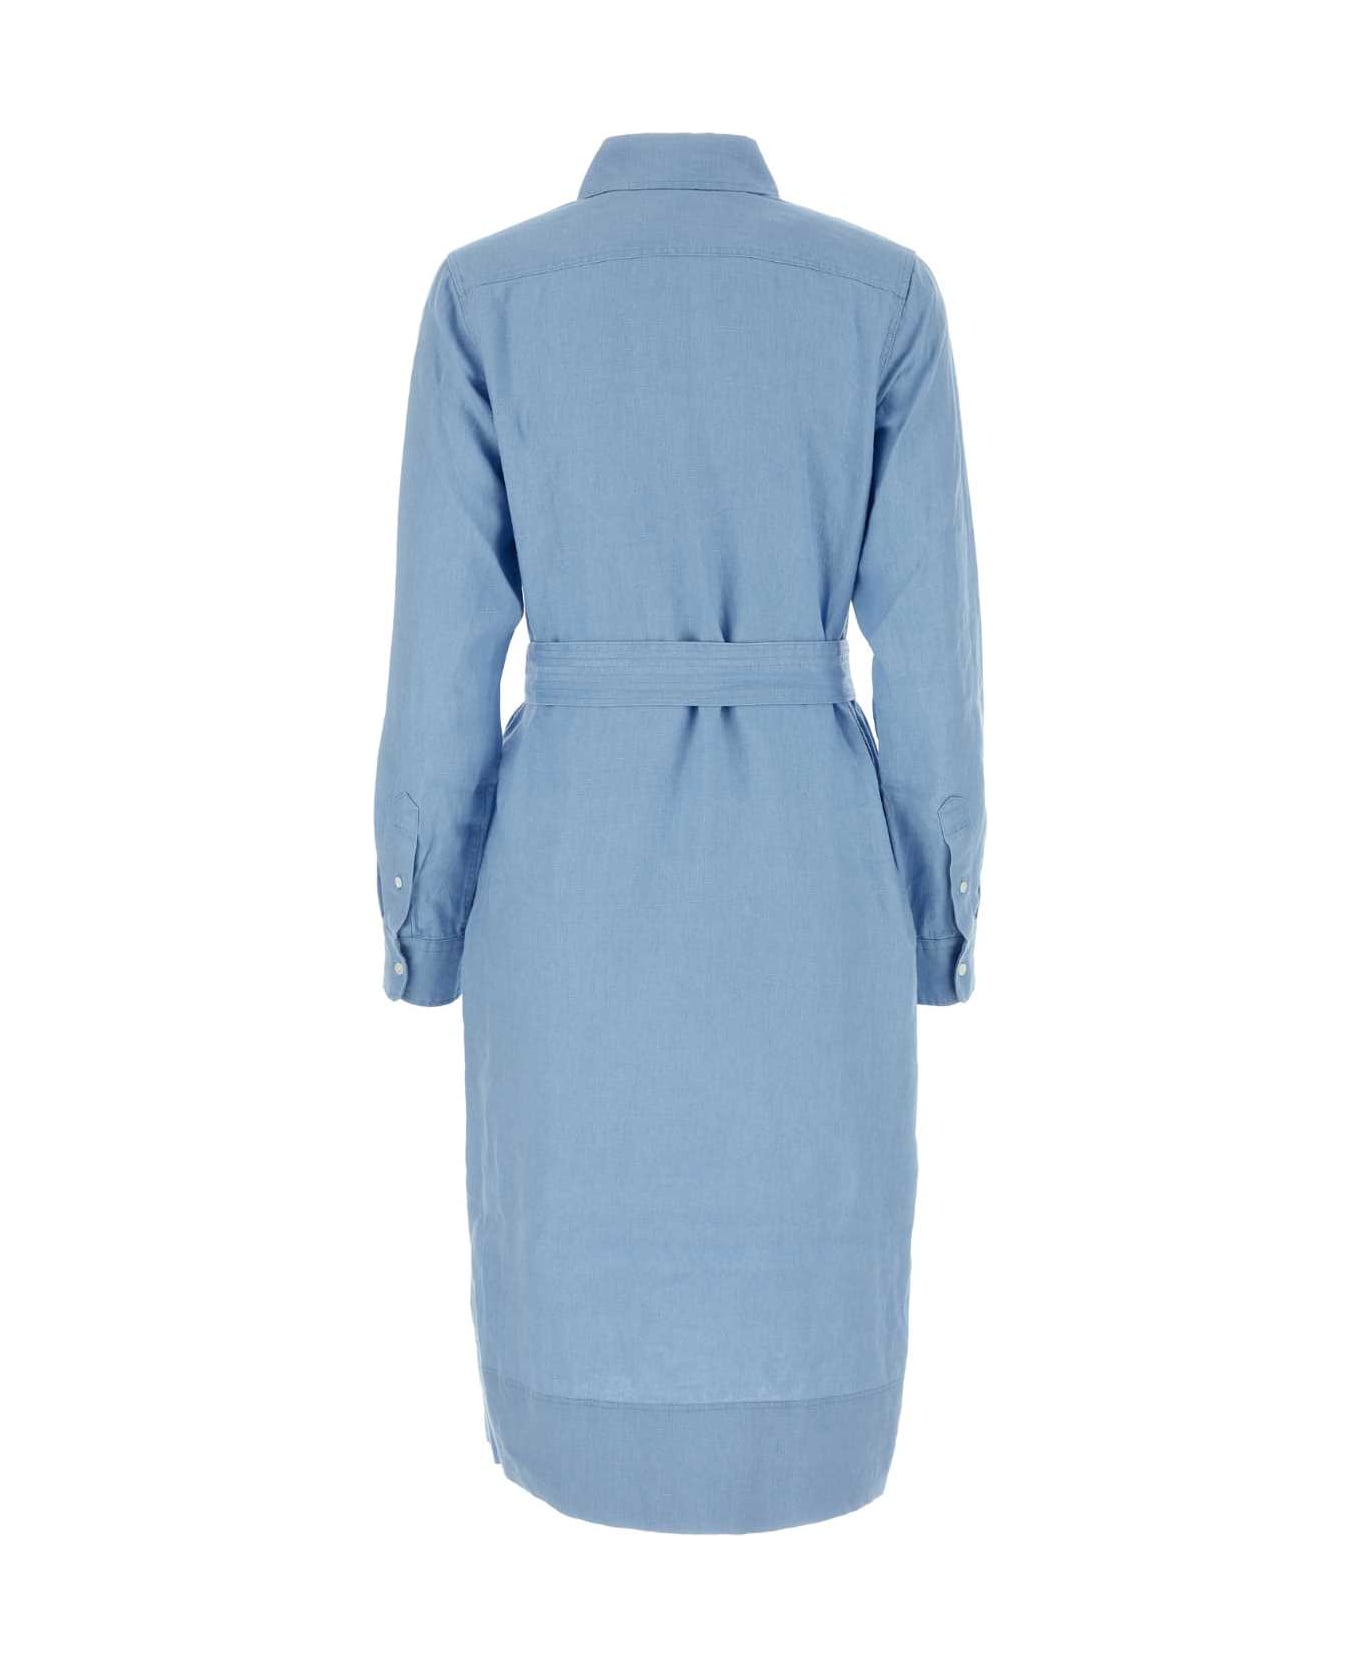 Polo Ralph Lauren Light Blue Linen Shirt Dress - CAROLINABLUE